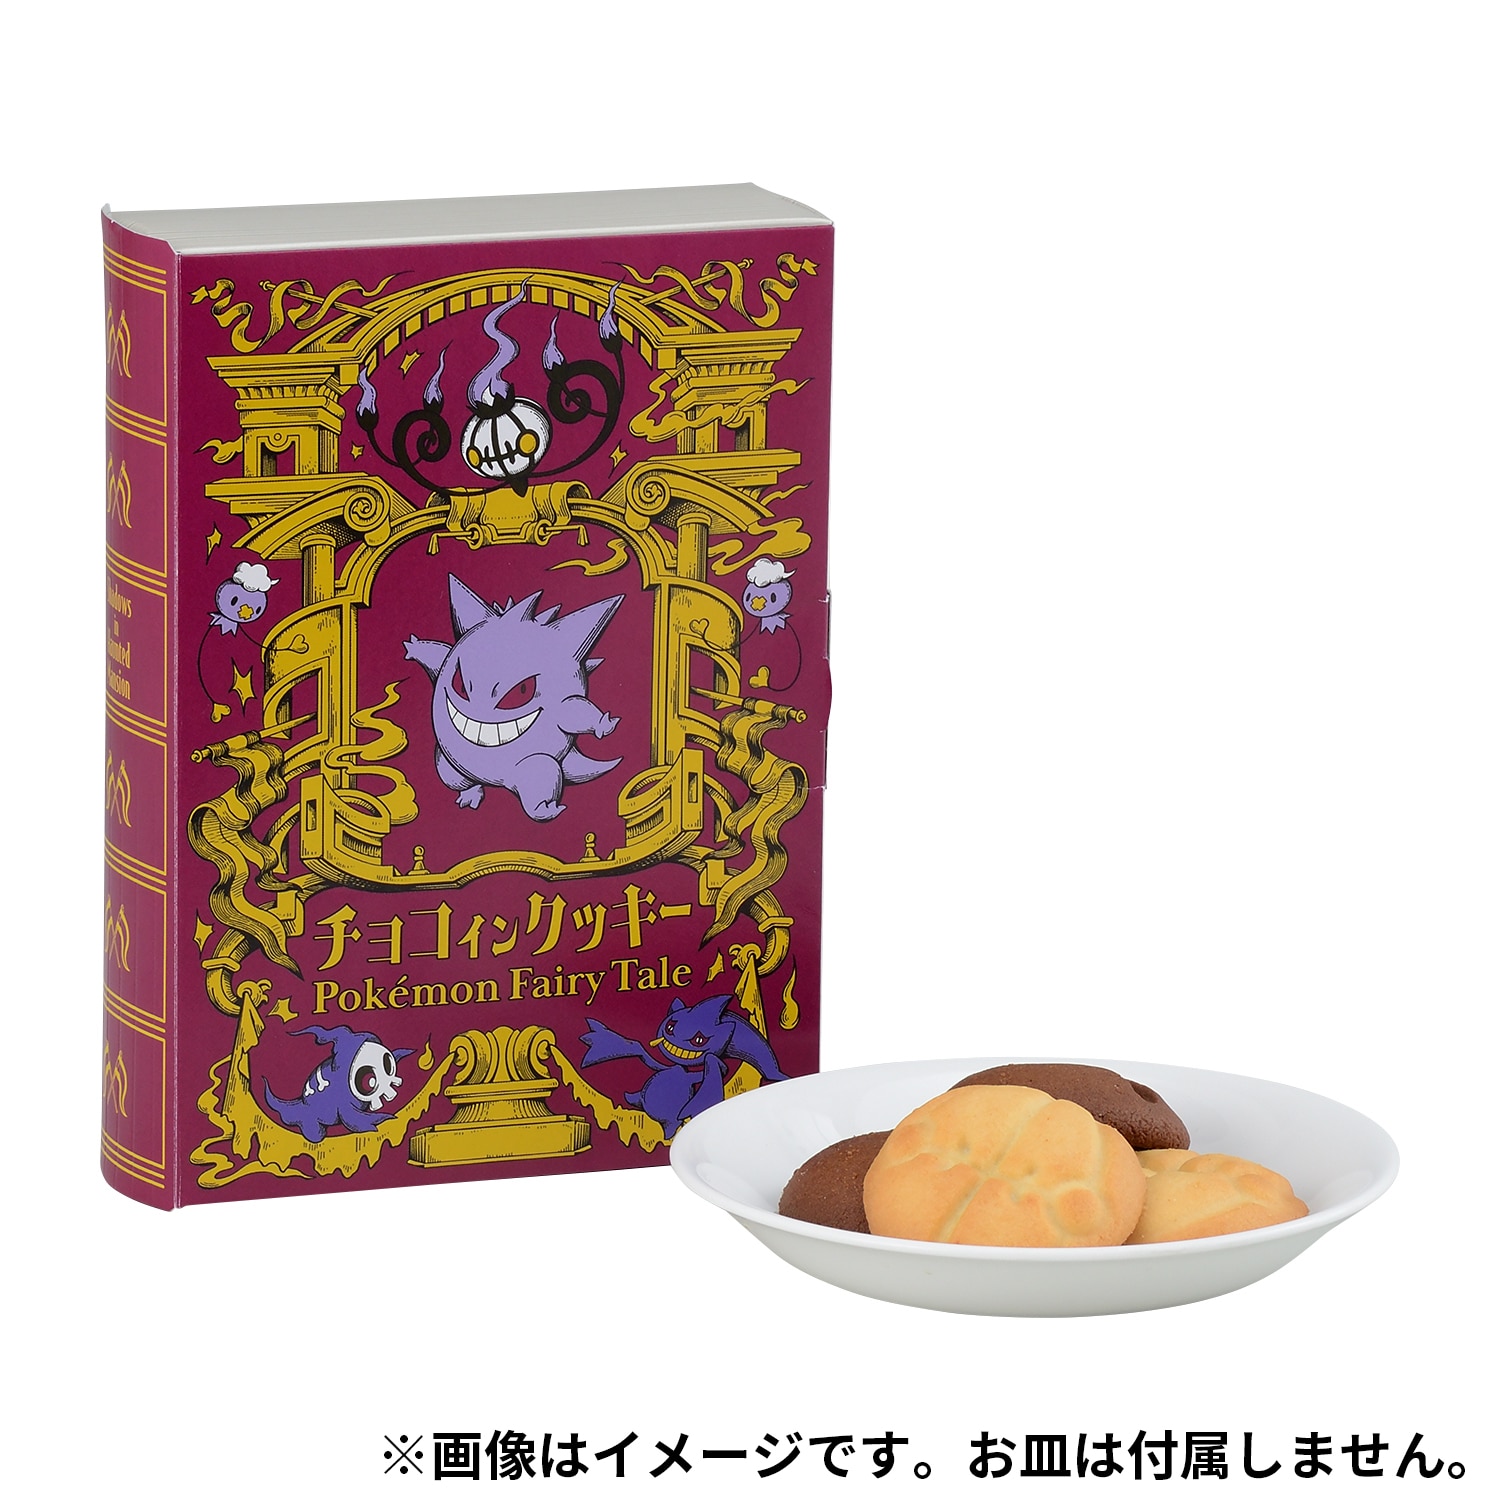 Pokemon Center Original Chocolate Cookies Gengar Pokémon Fairy Tale